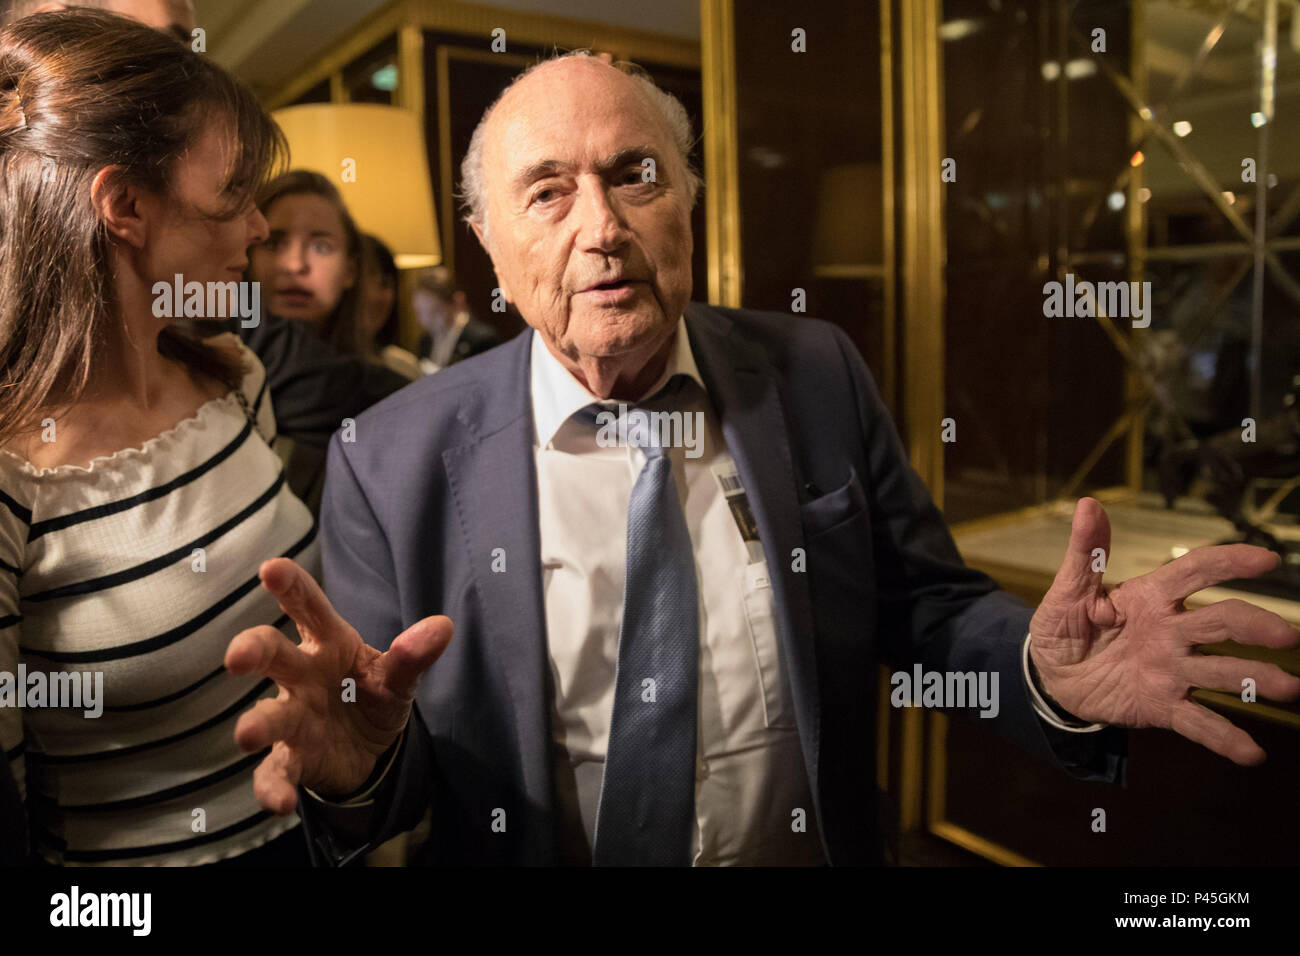 Former FIFA president Joseph 'Sepp' Blatter arrives at The St Regis Hotel in Moscow. Stock Photo